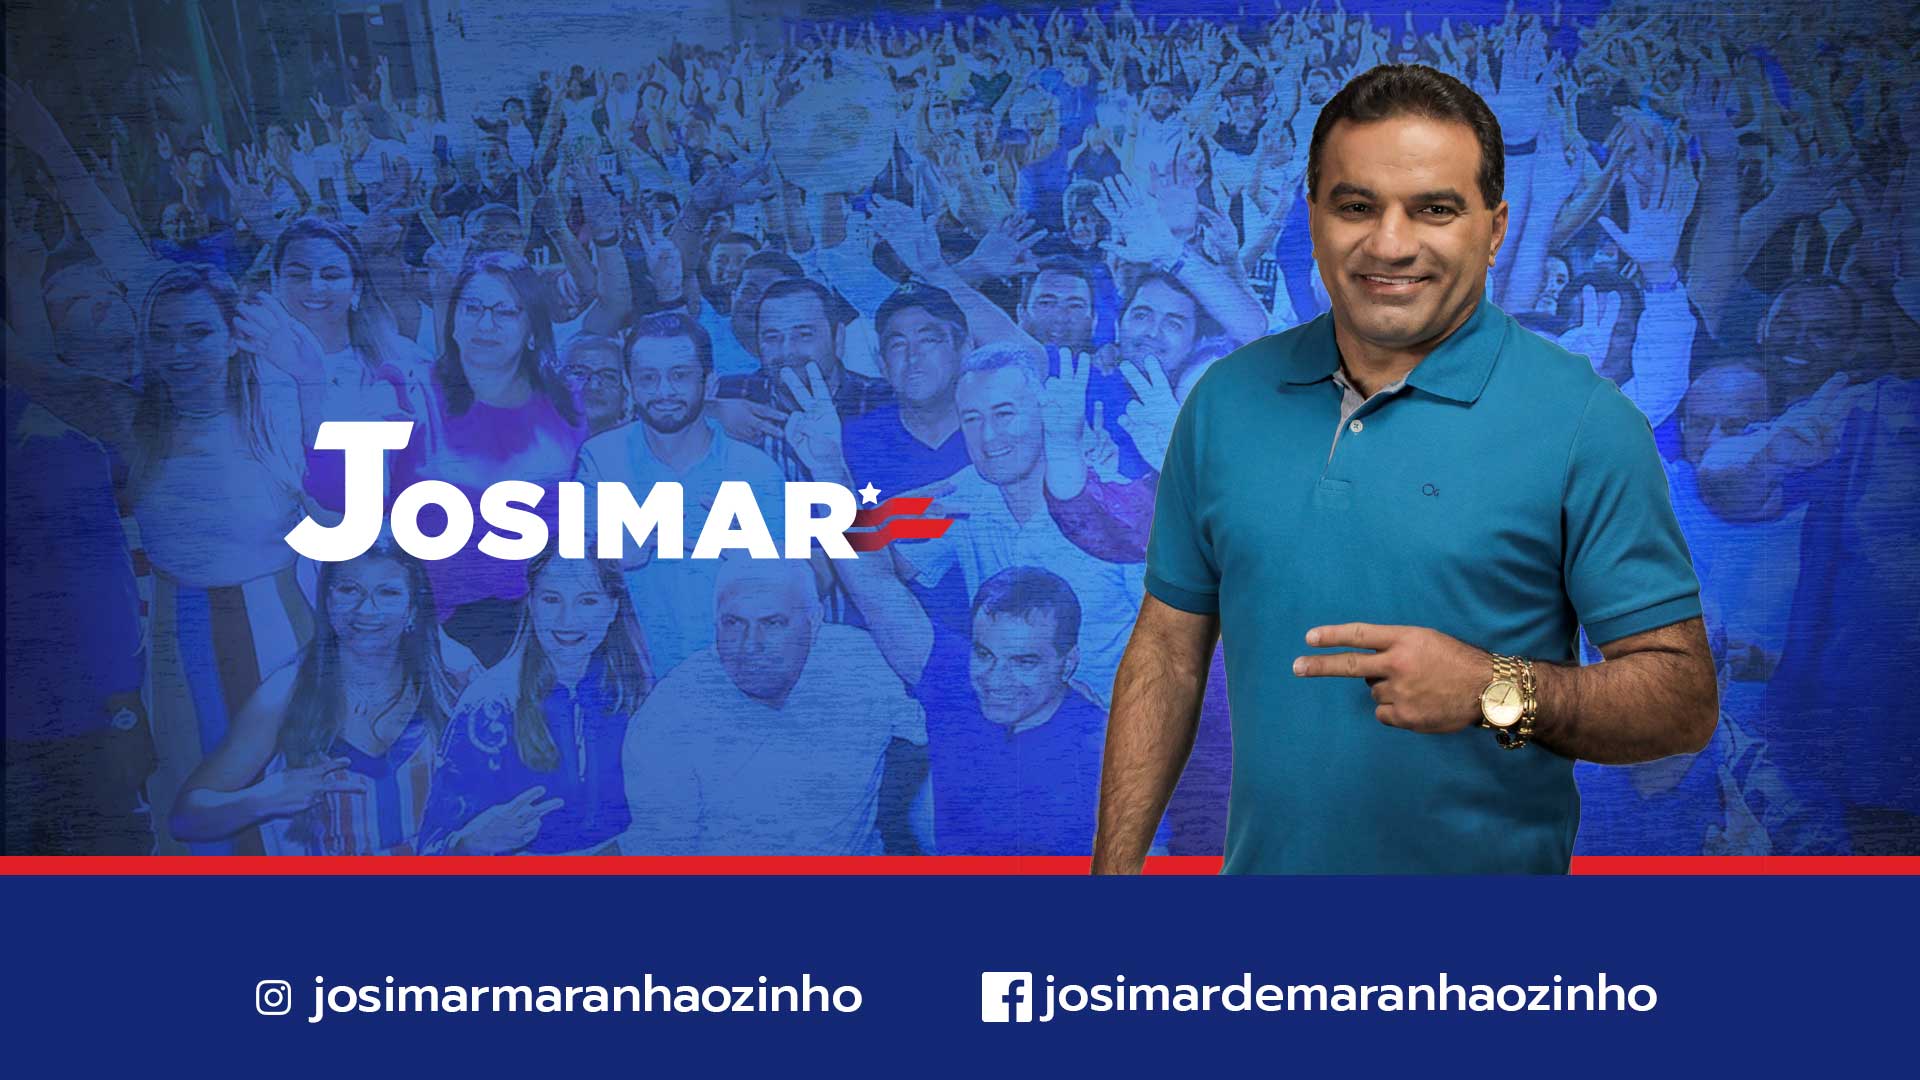 Josimar Maranhãozinho Josimar Maranhãozinho 2222